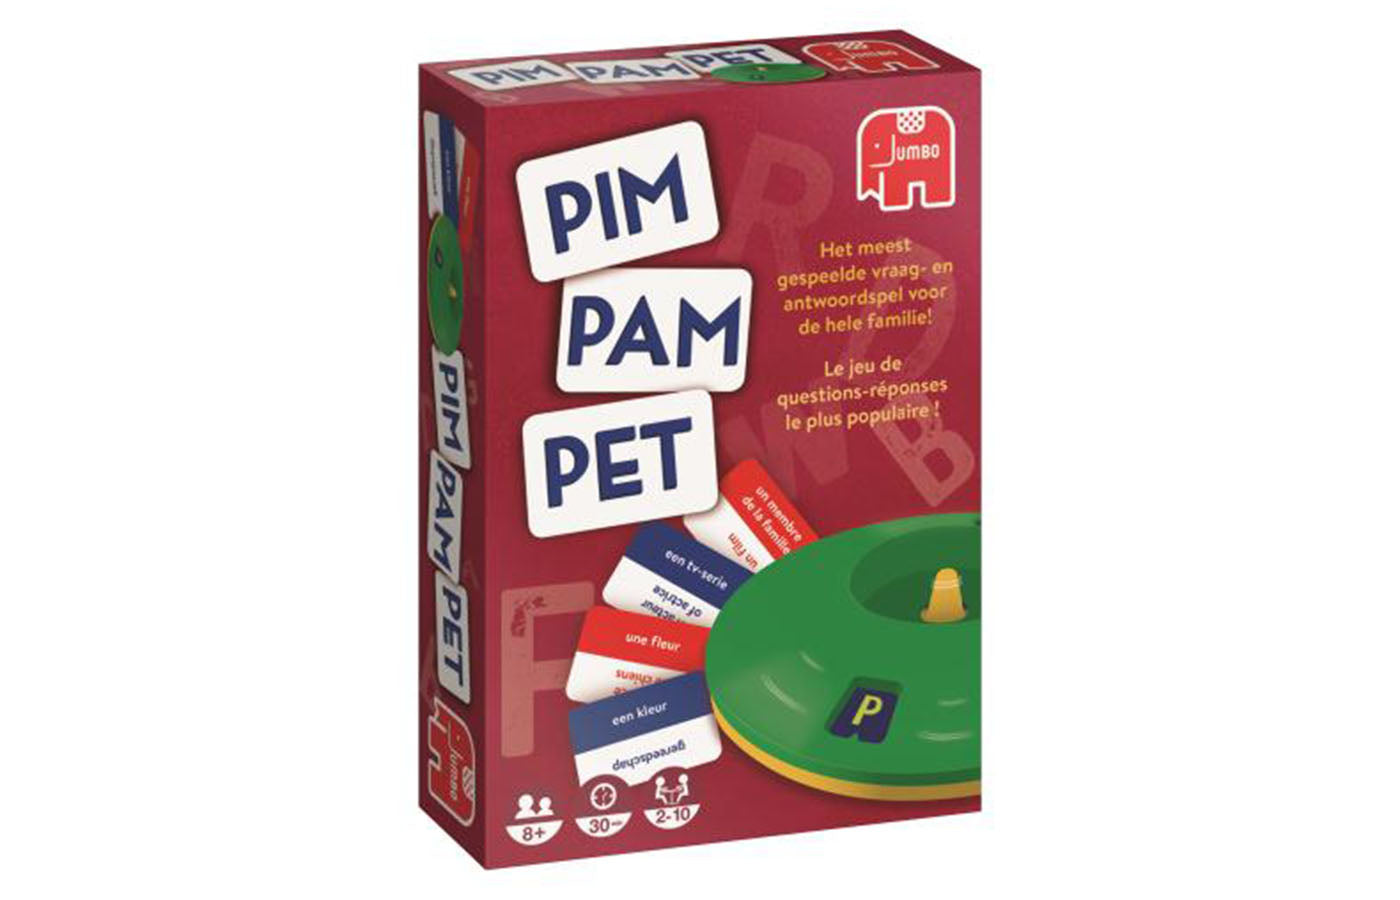 Pim Pam Pet - original